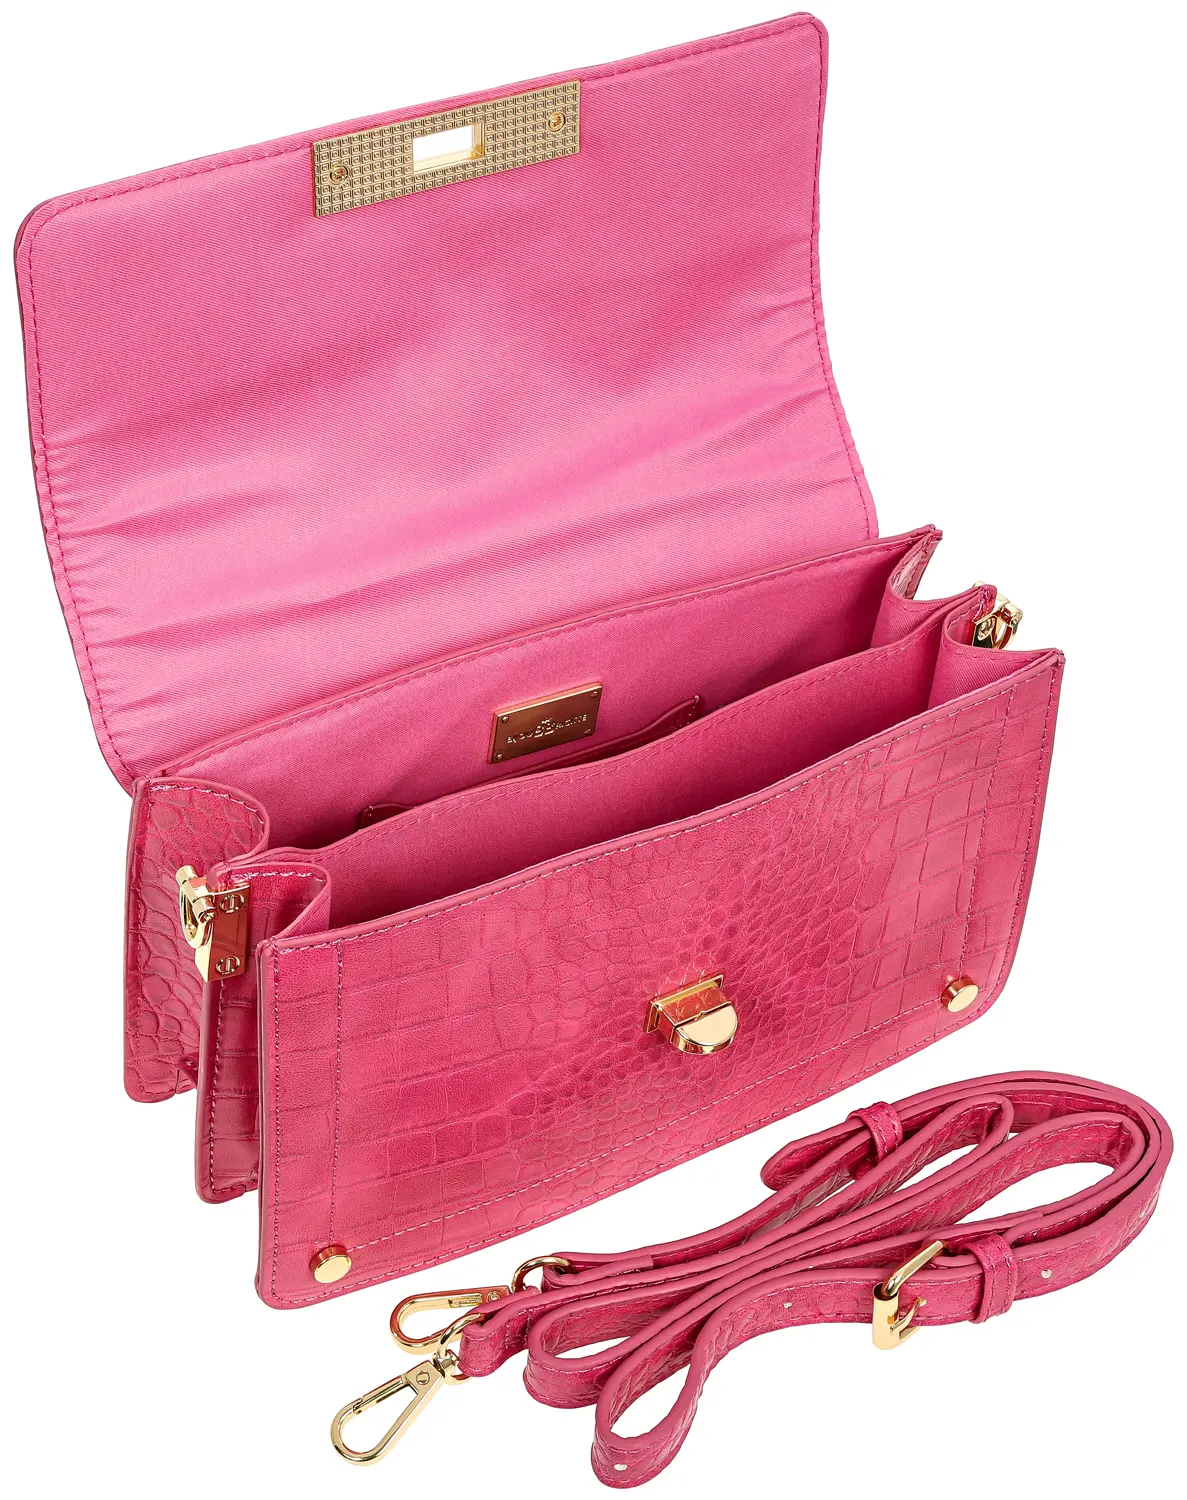 Tasche - Pink Passion